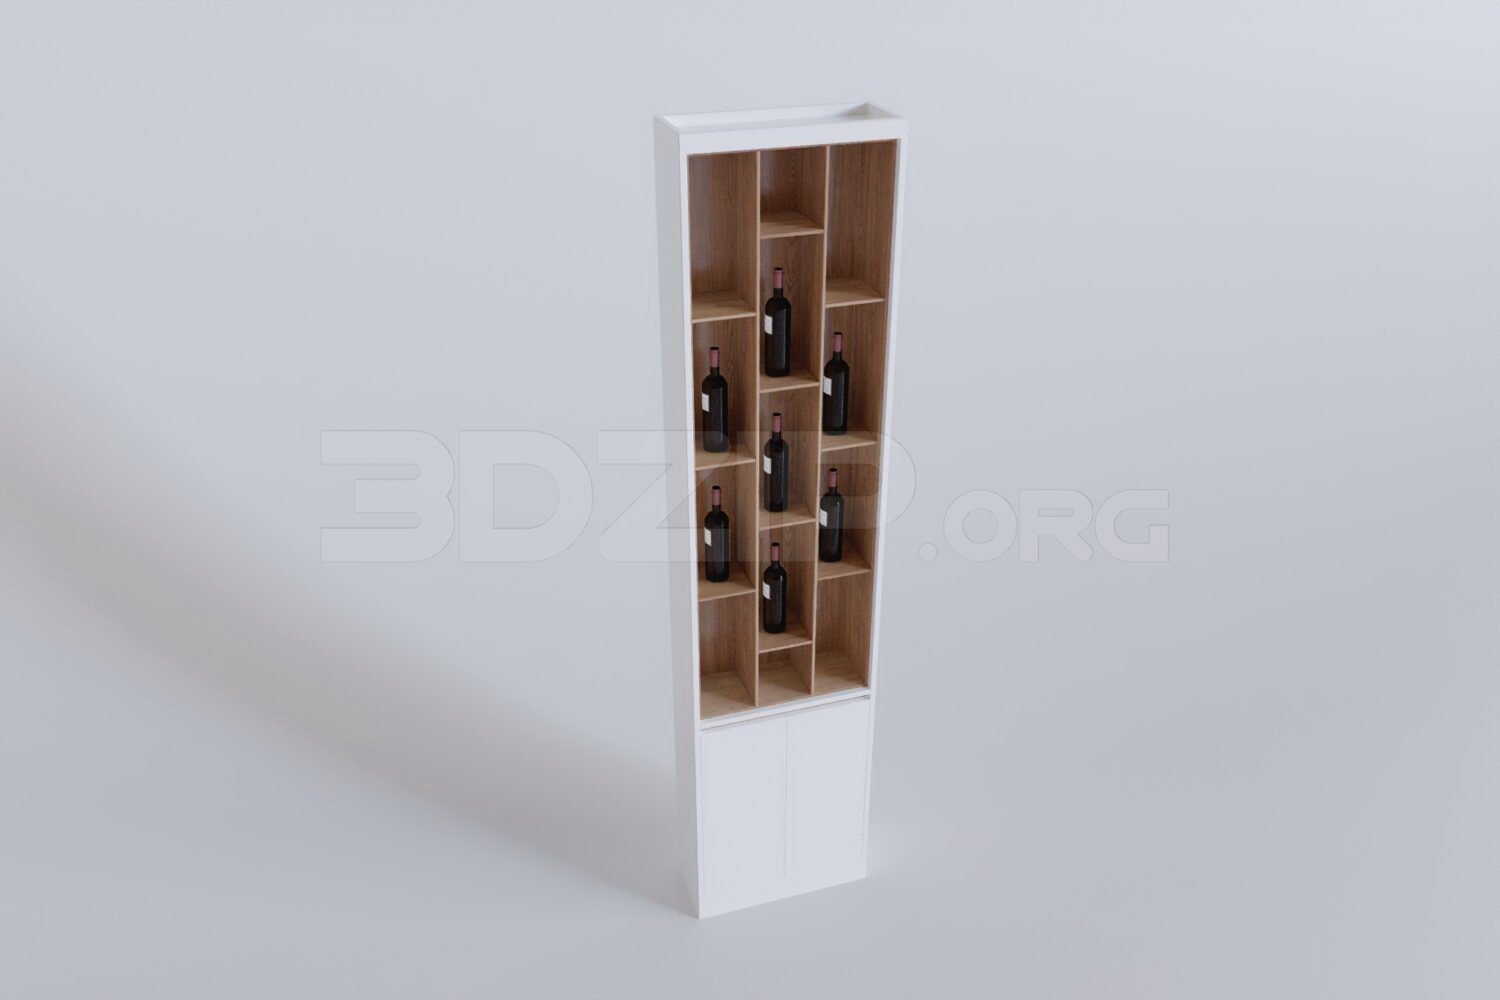 229. Download Free Wine Cabinet Model By Duc Nguyen